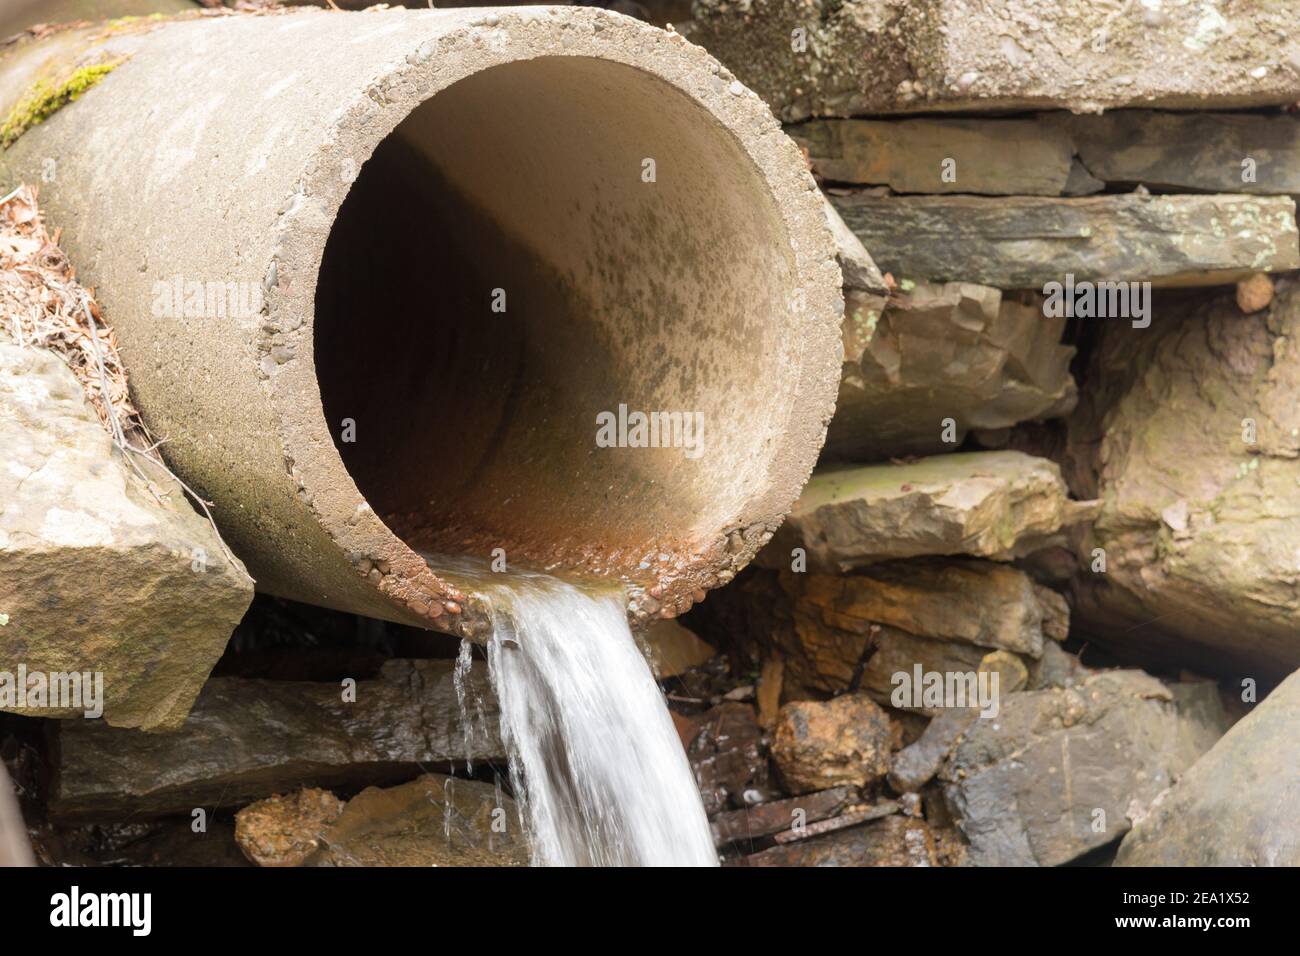 Un ancien tuyau d'évacuation en béton dans un mur en pierre. Un peu d'eau  s'écoule du tuyau. La mise au point se fait sur le bord le plus proche  Photo Stock -